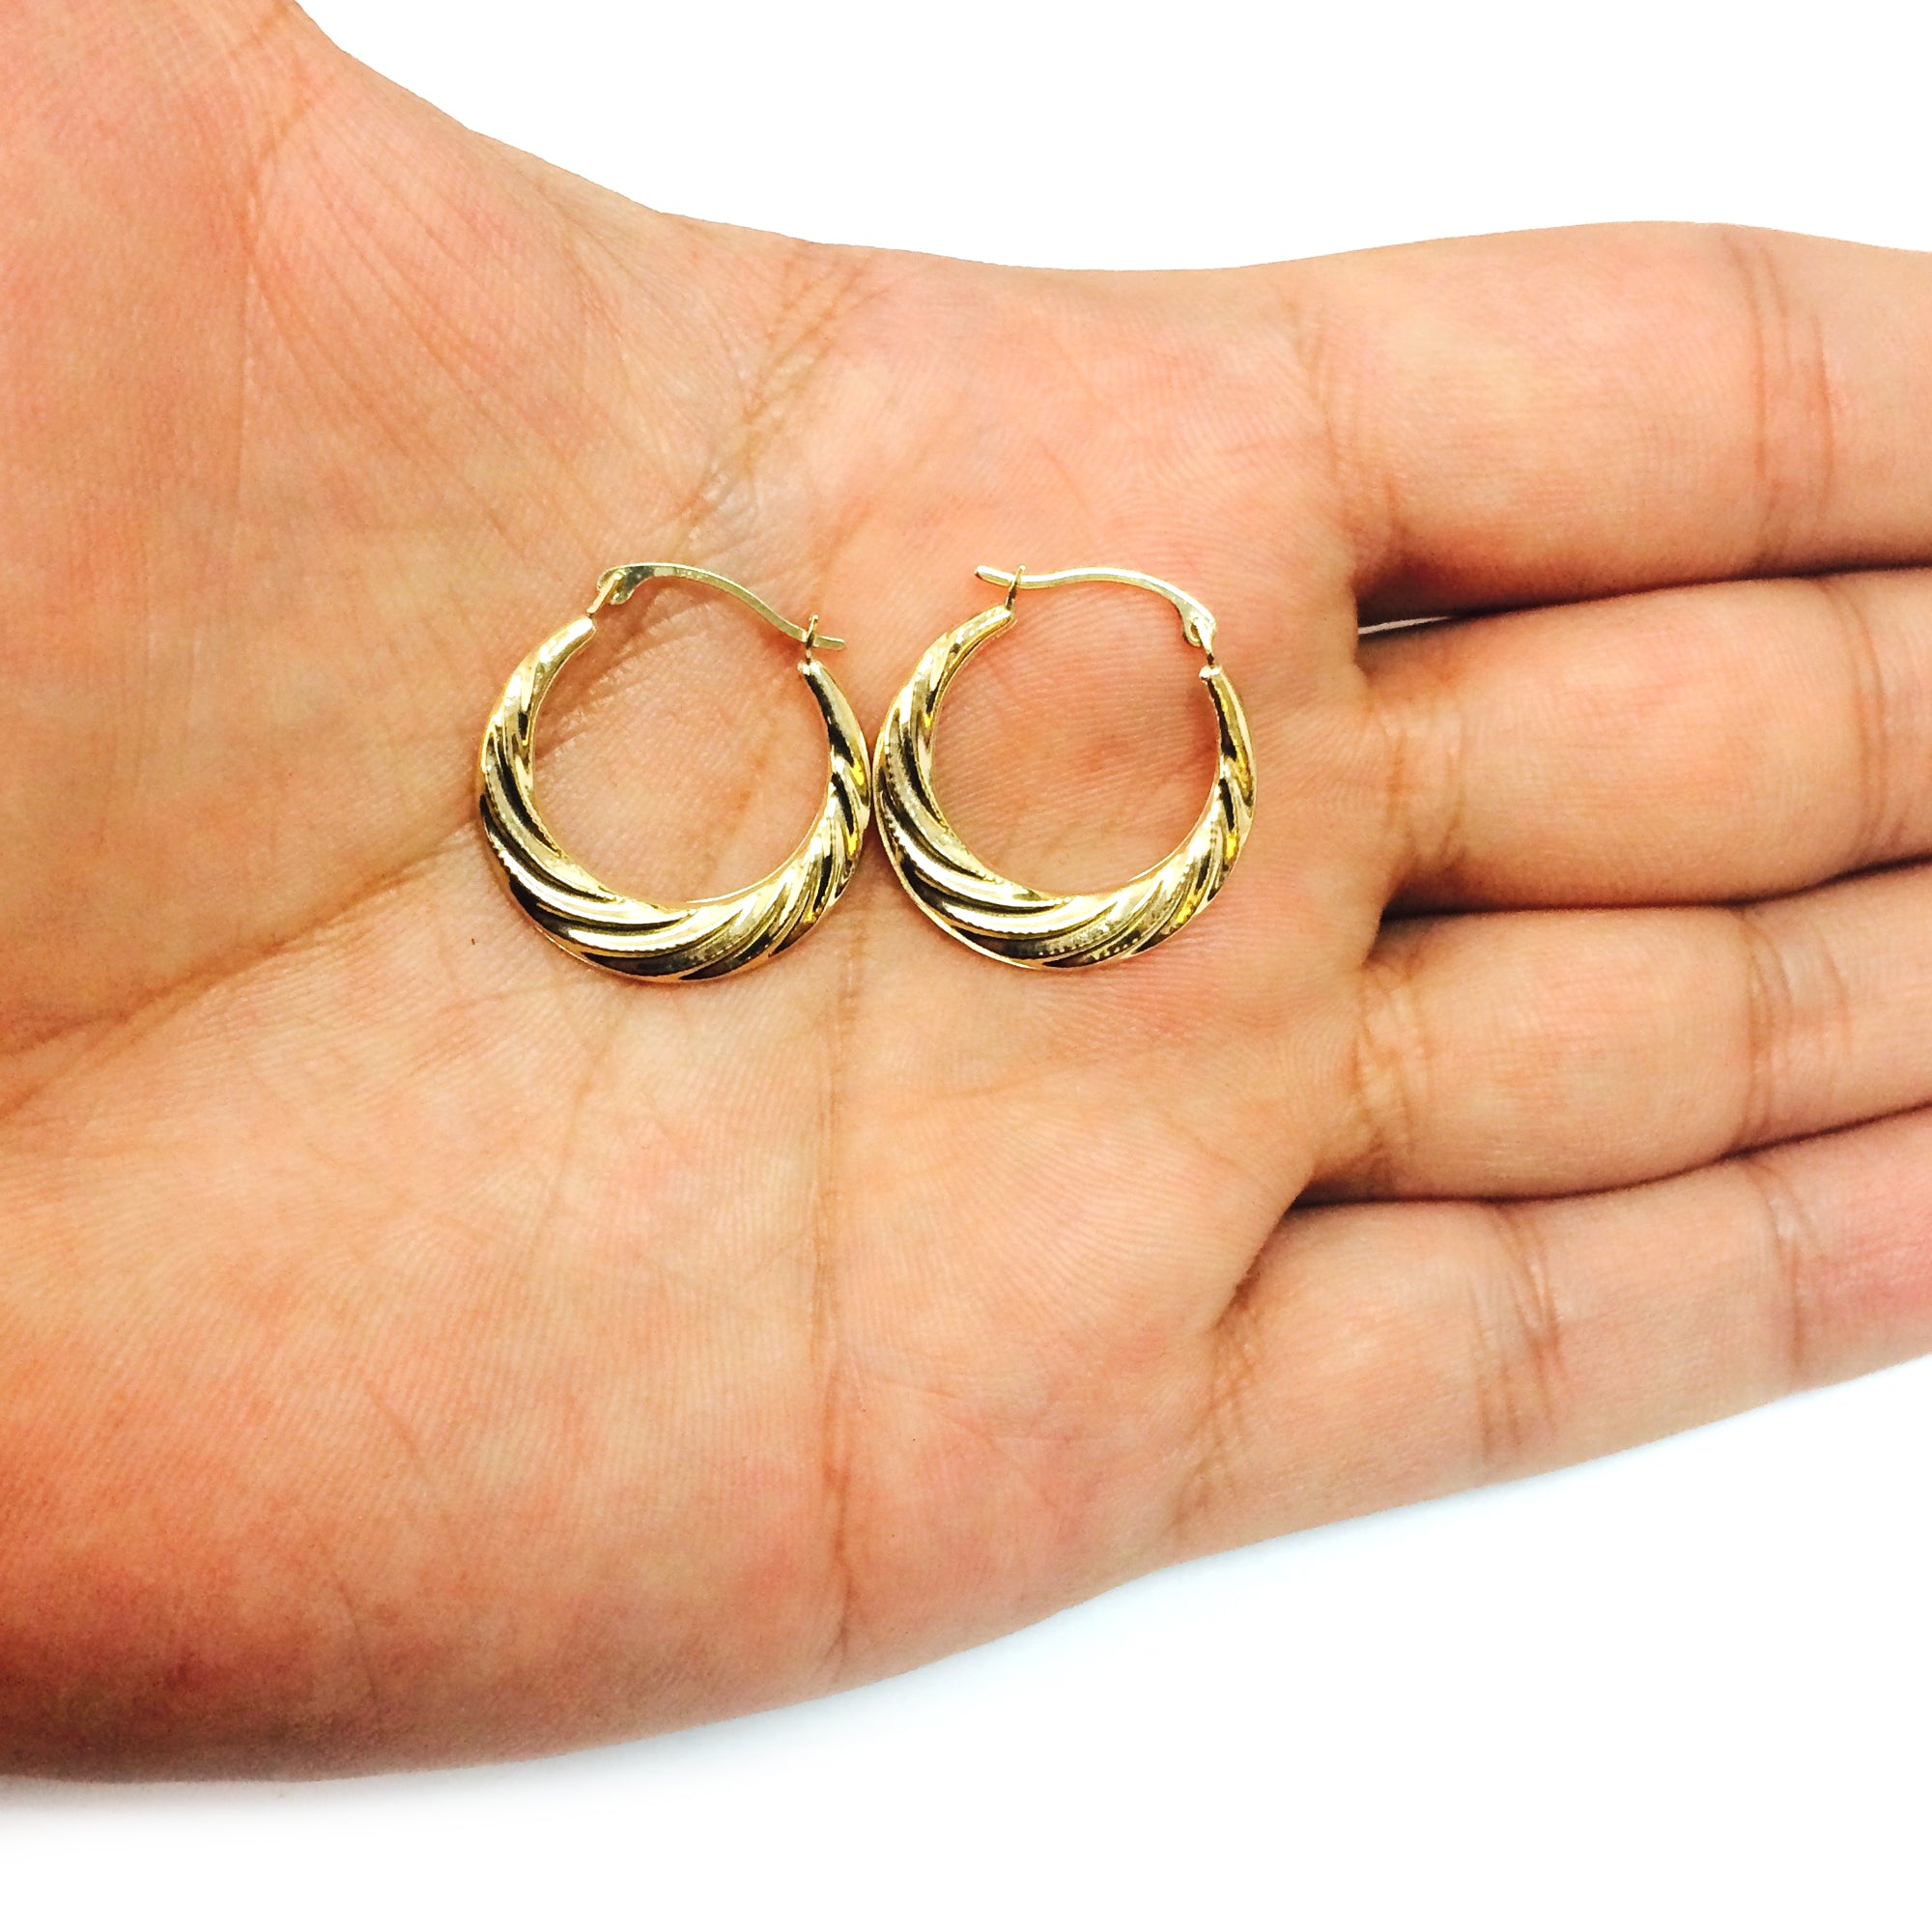 10k gul guld Swirl teksturerede graduerede runde bøjle øreringe, diameter 20 mm fine designersmykker til mænd og kvinder